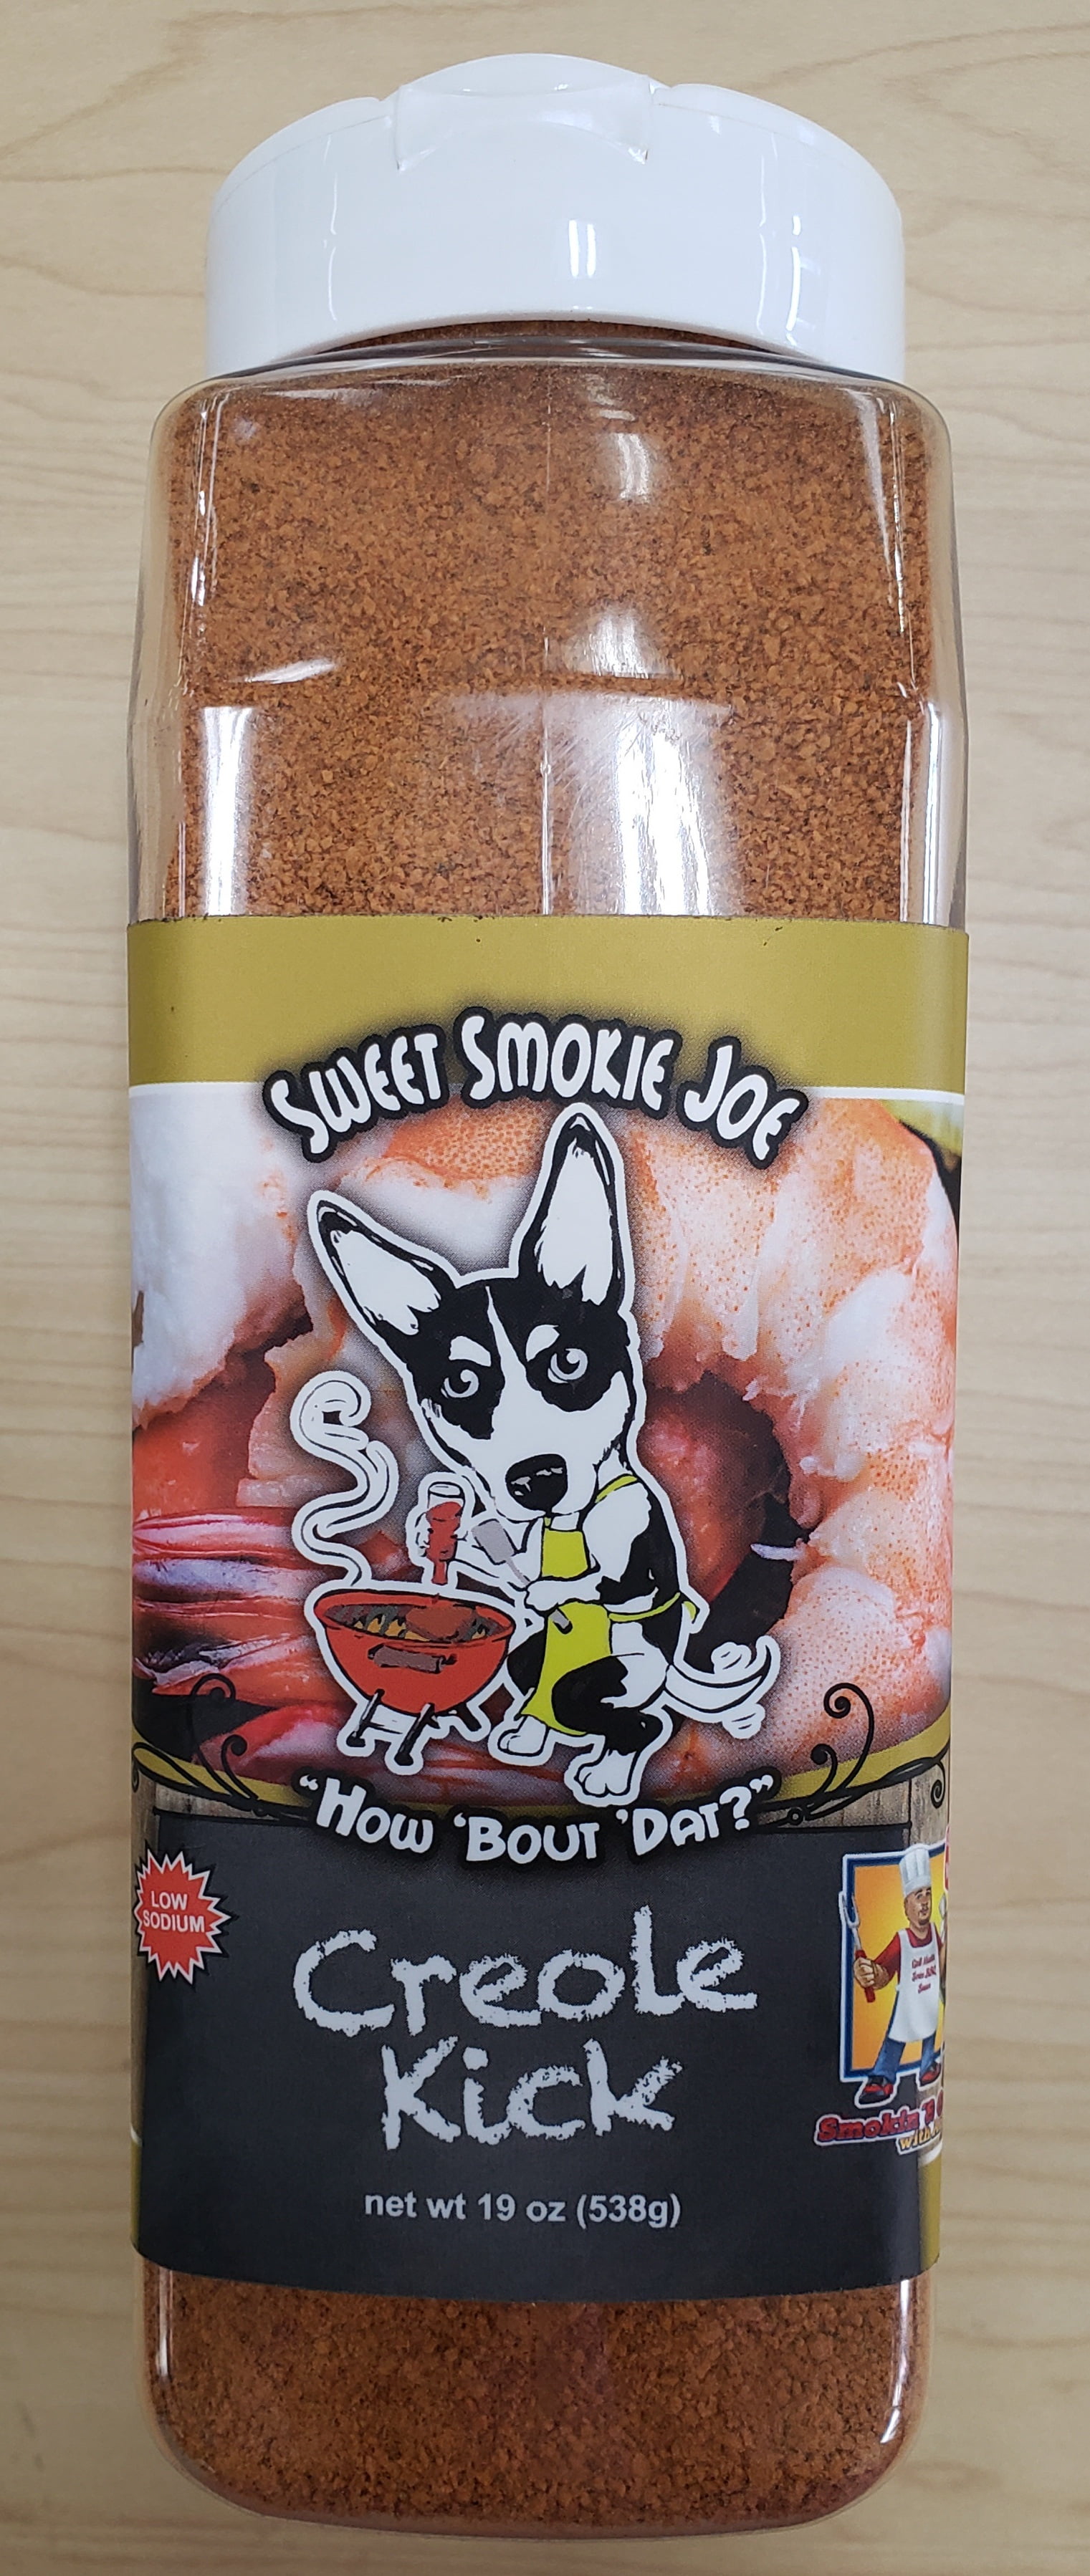  Sweet Smokie Joe The Original Creole Kick 19 oz